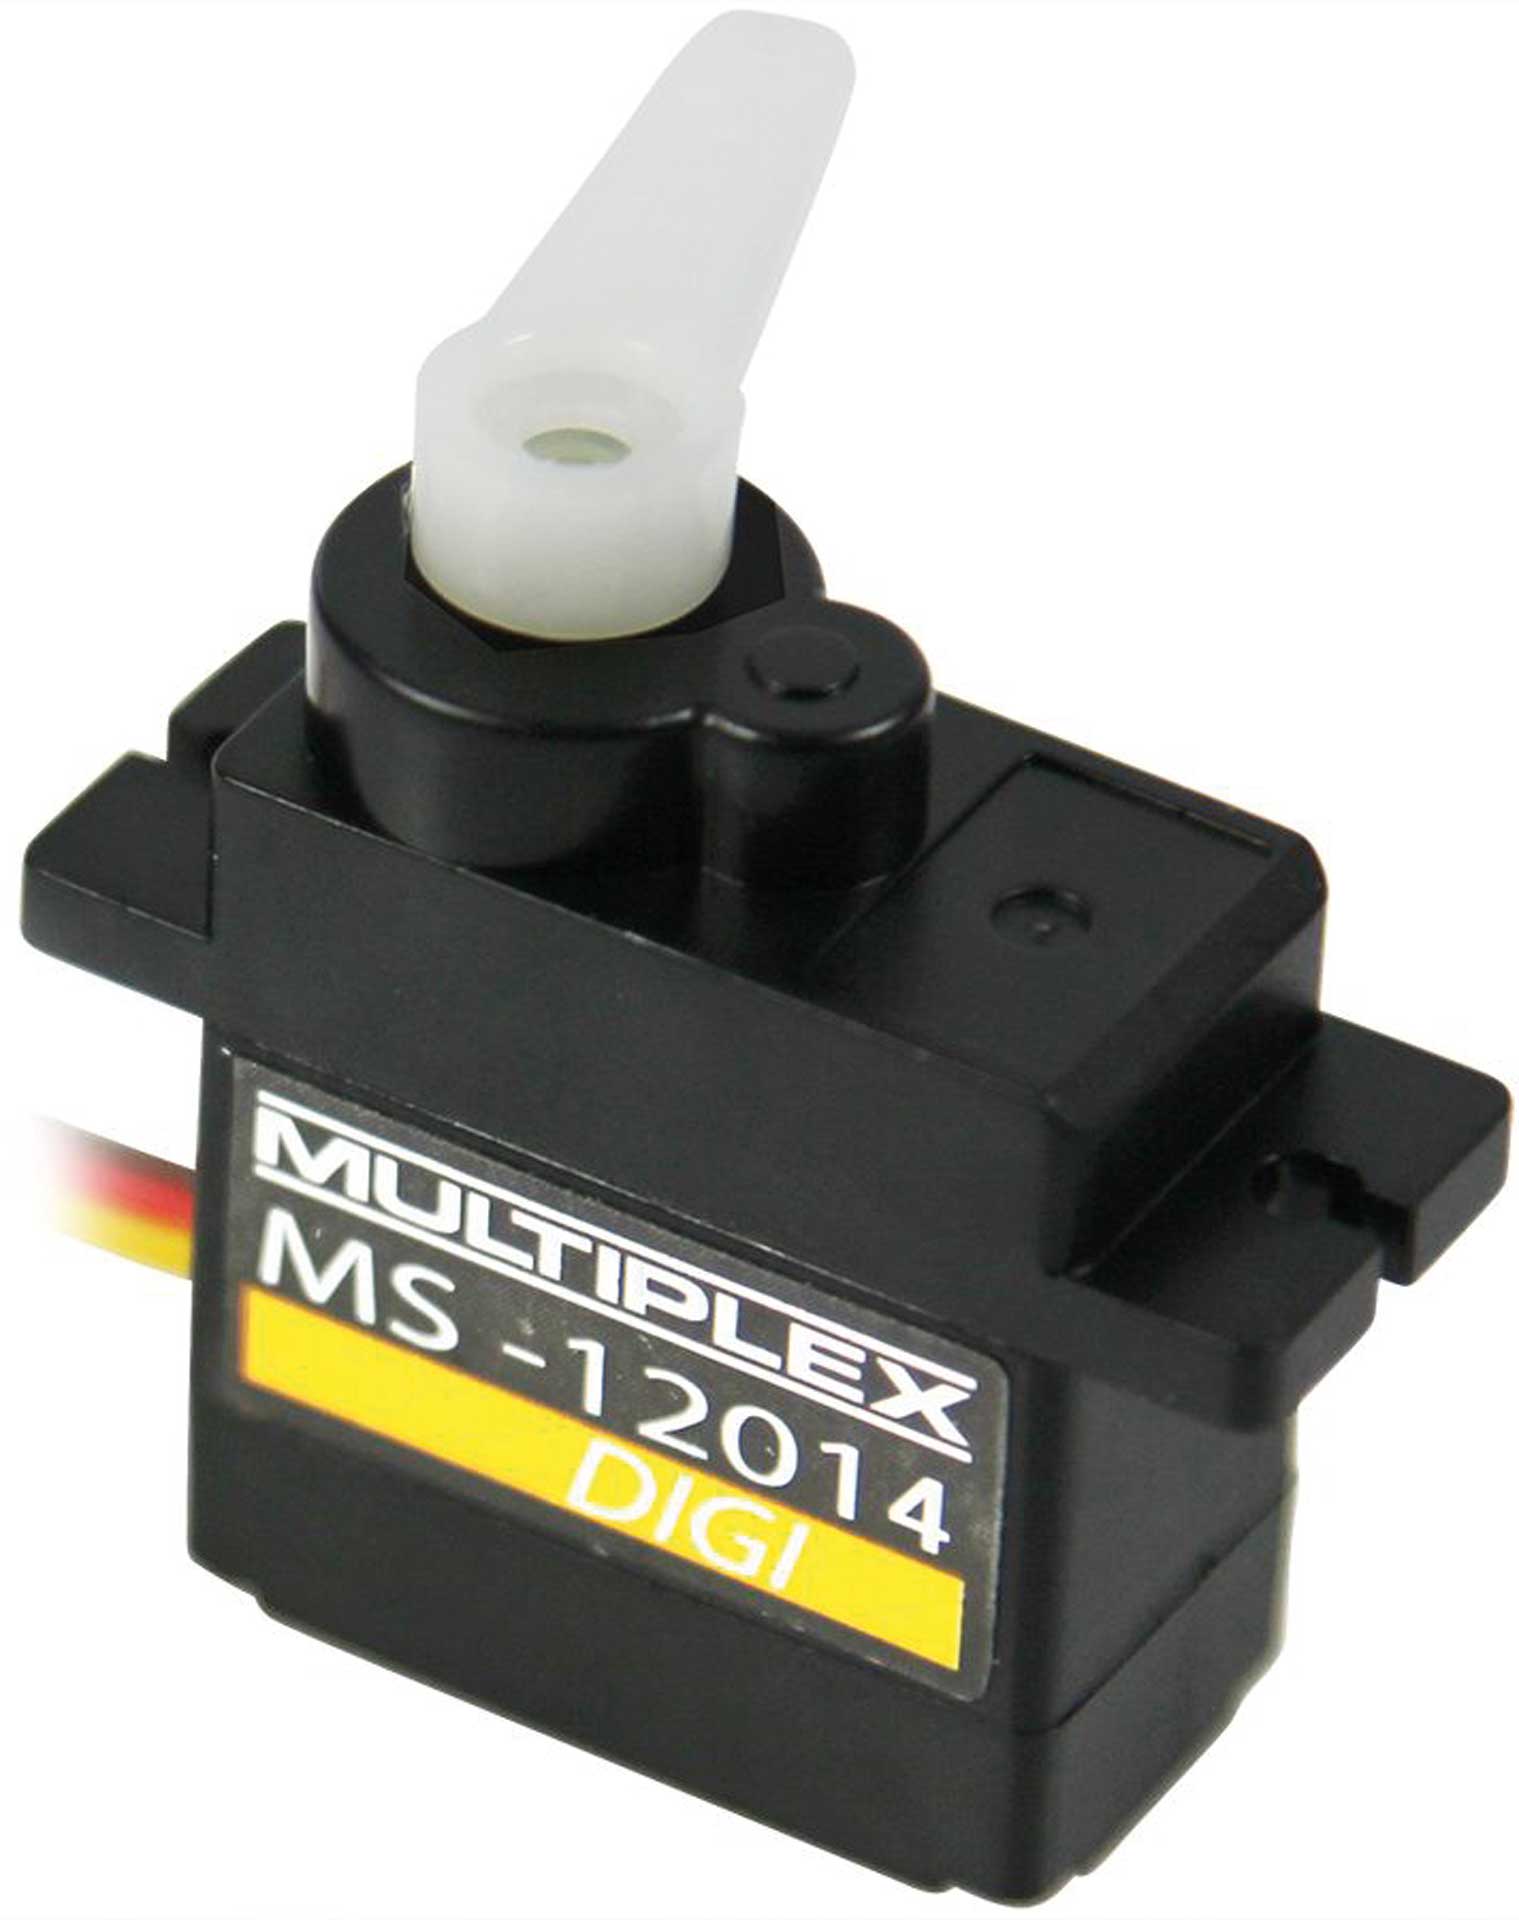 MULTIPLEX Servo MS-12014 DIGI